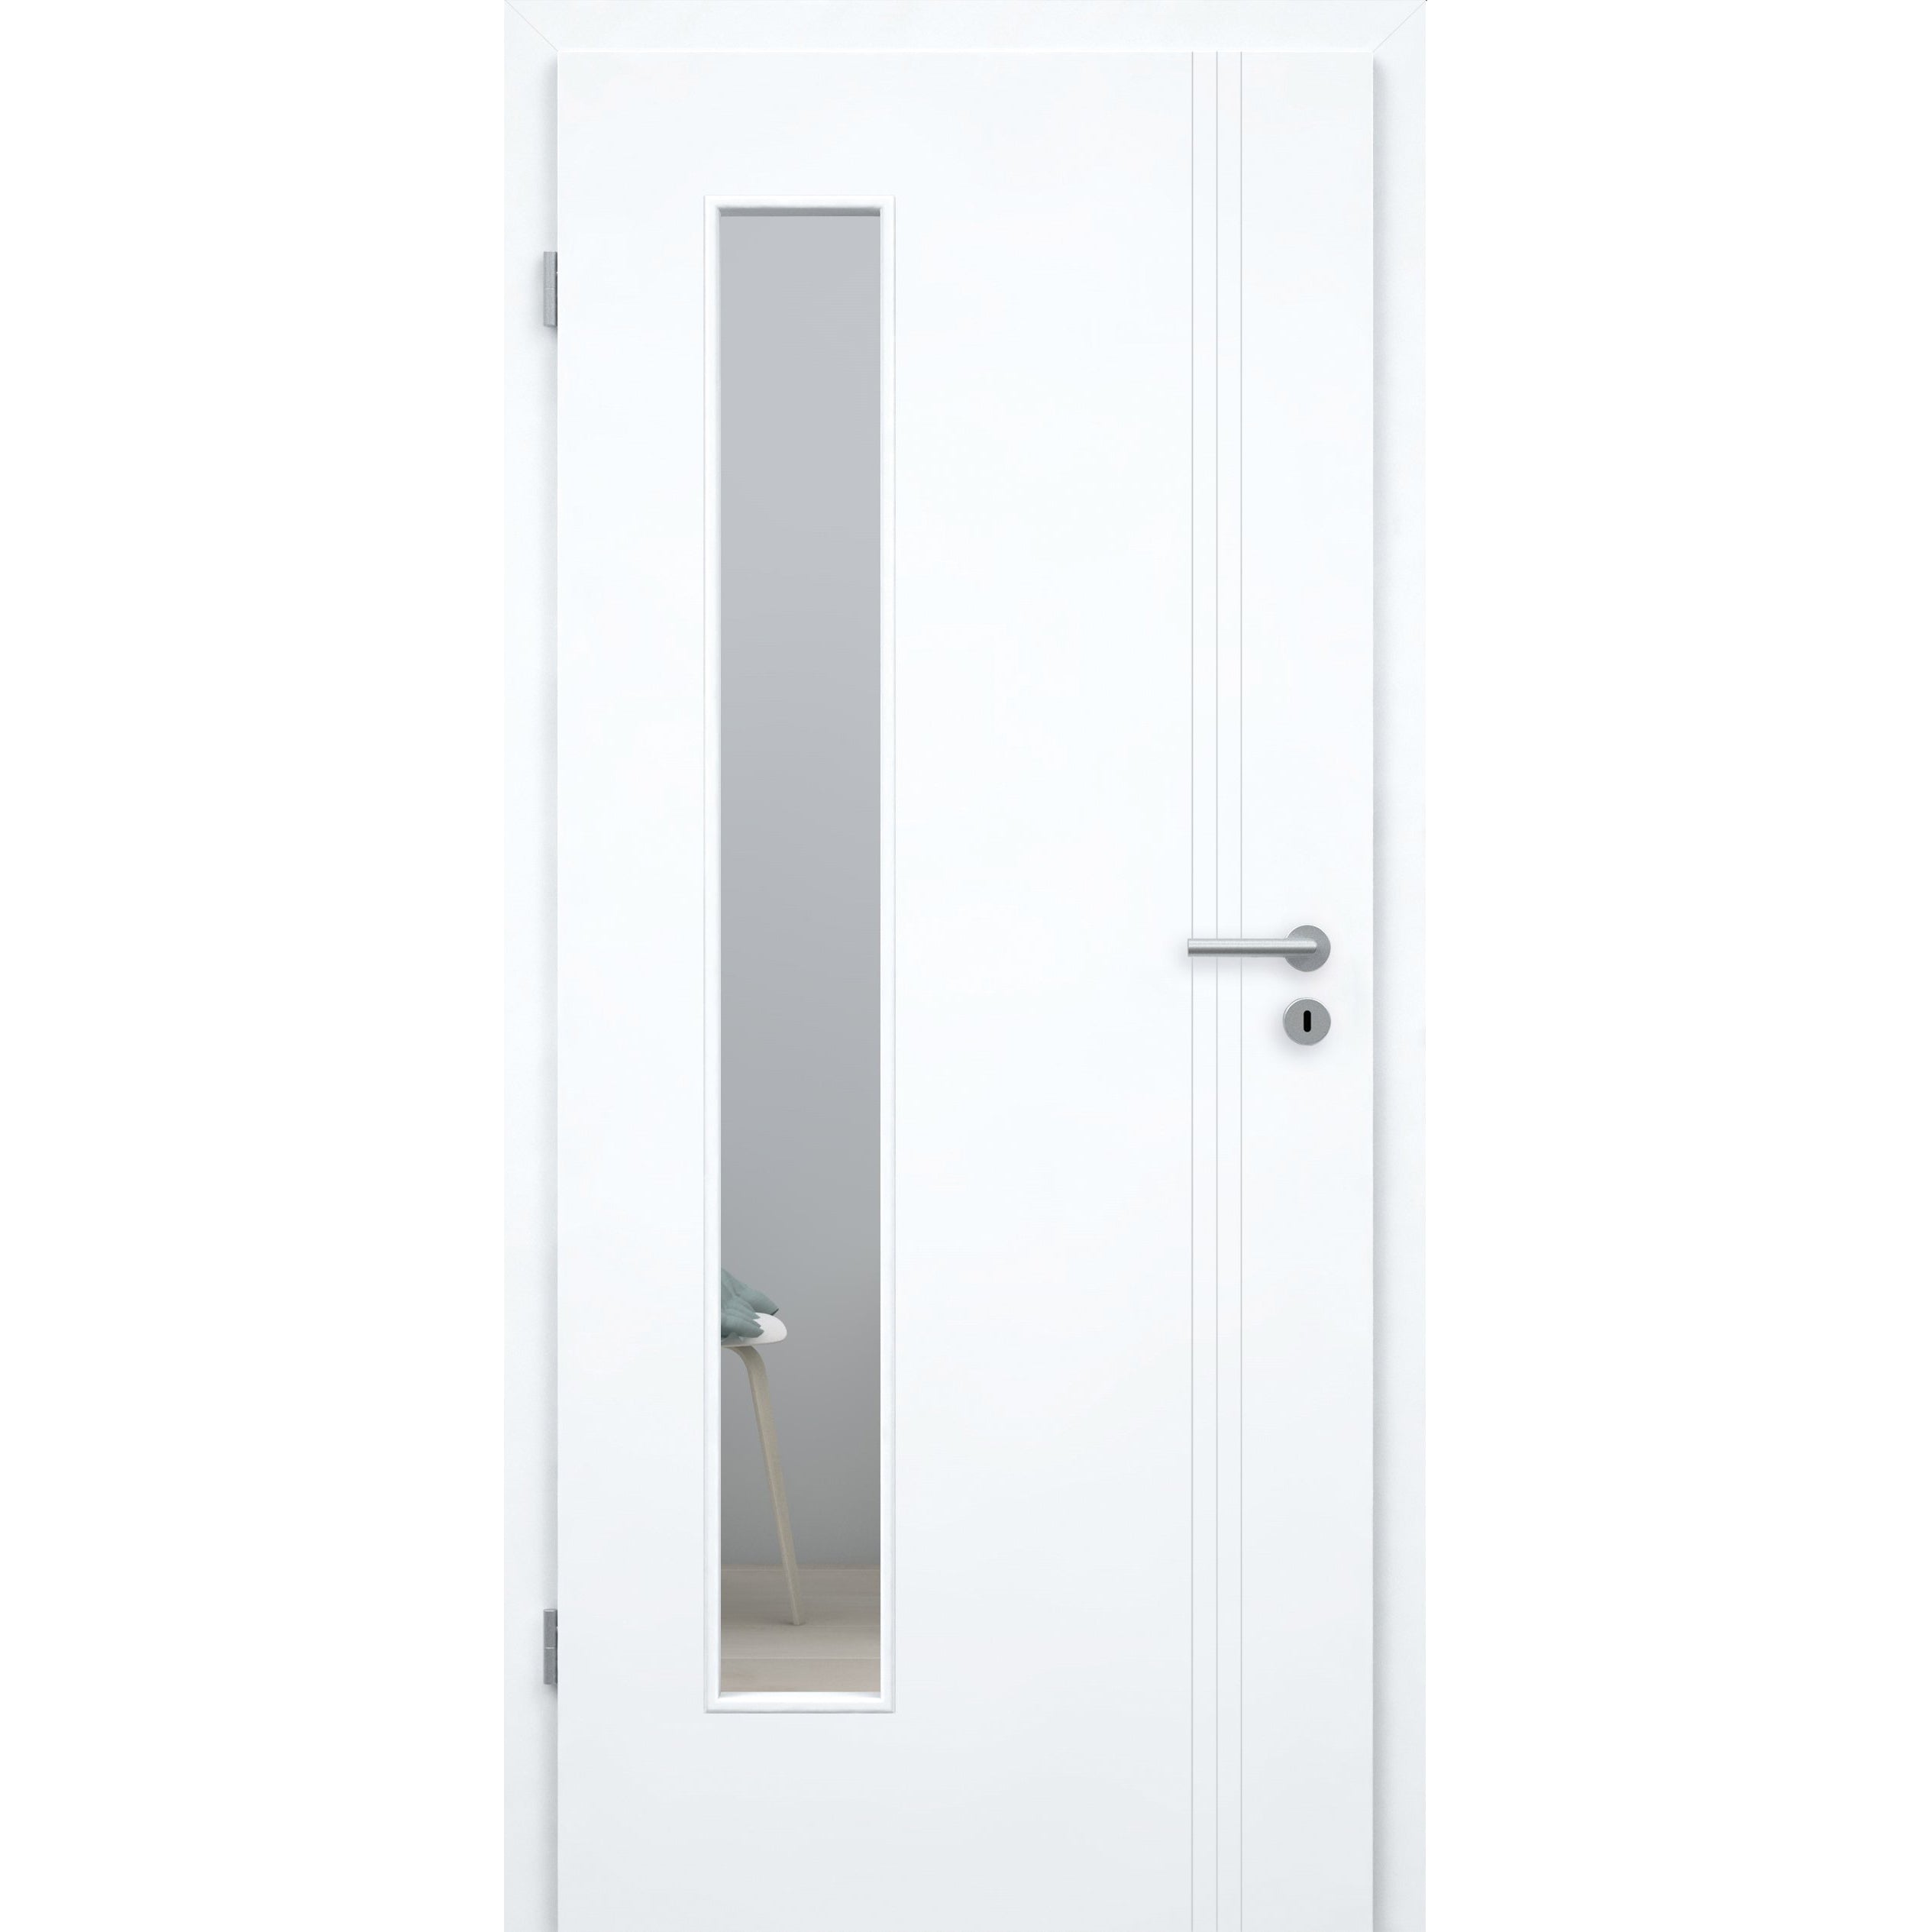 Zimmertür mit Lichtausschnitt brillant-weiß 3 Rillen aufrecht Schlossseite Designkante - Modell Designtür VS33LAB